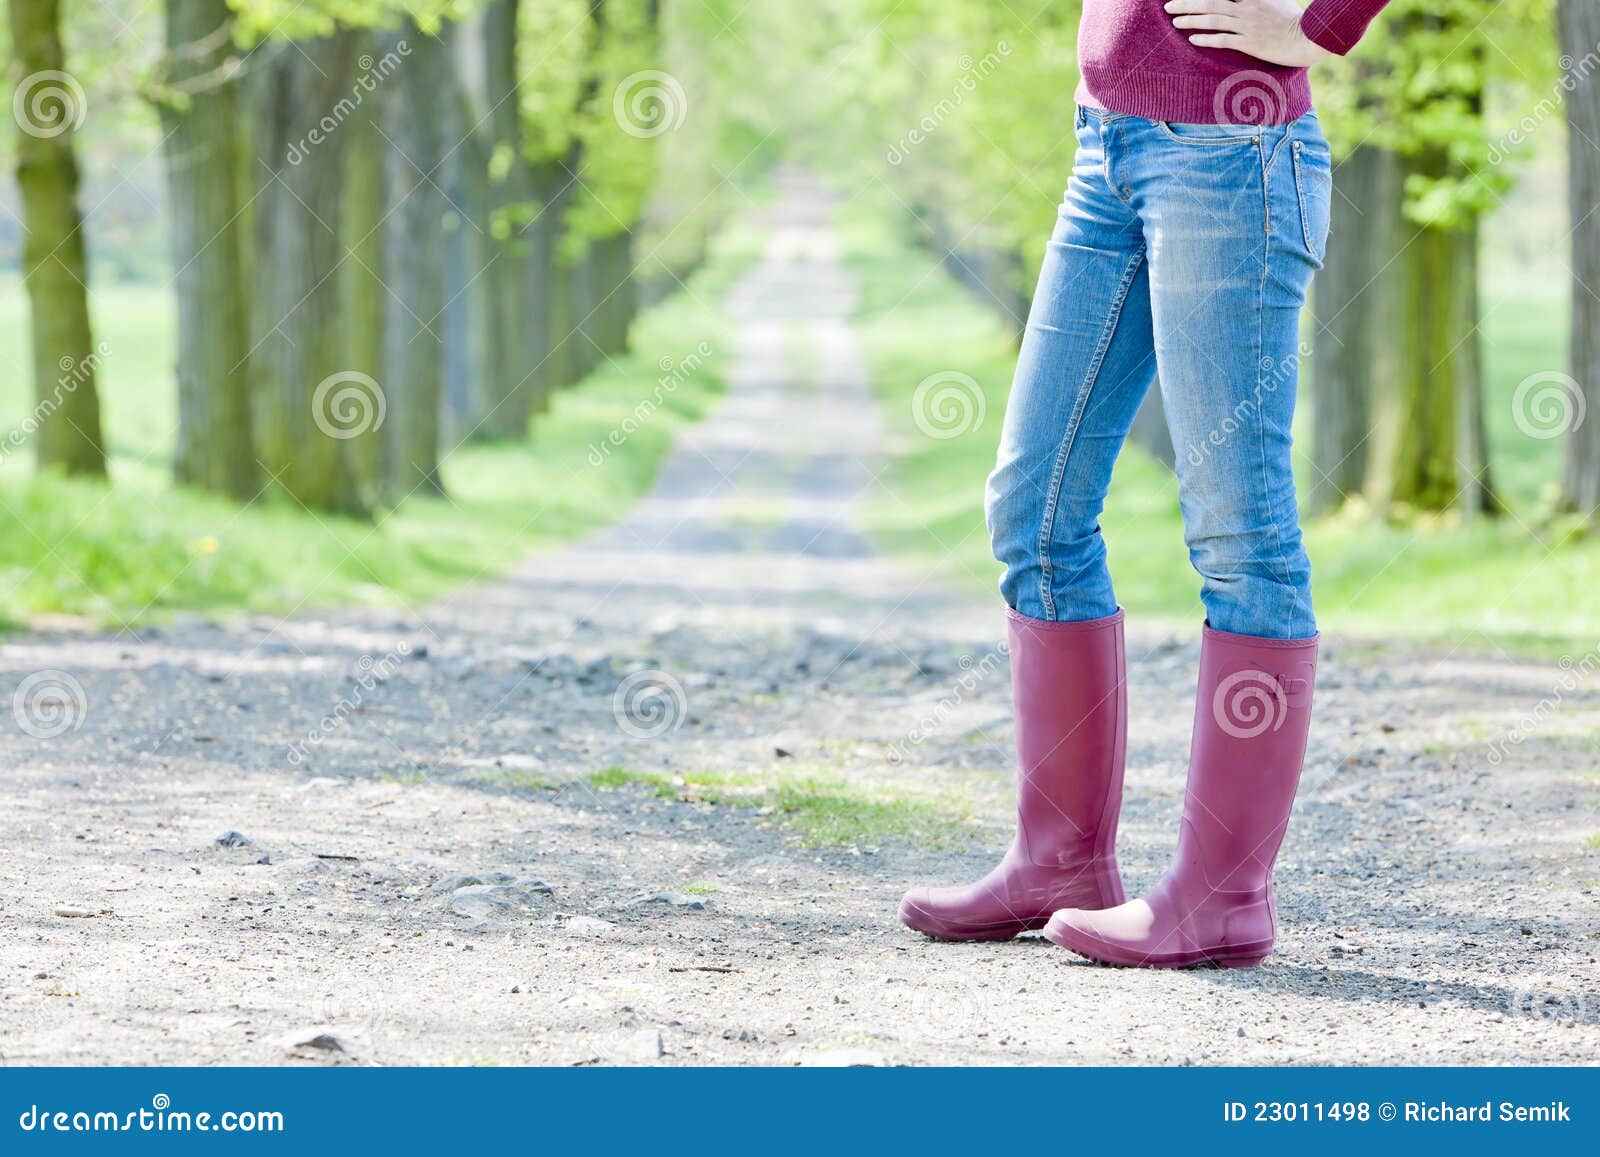 women wearing rubber boots